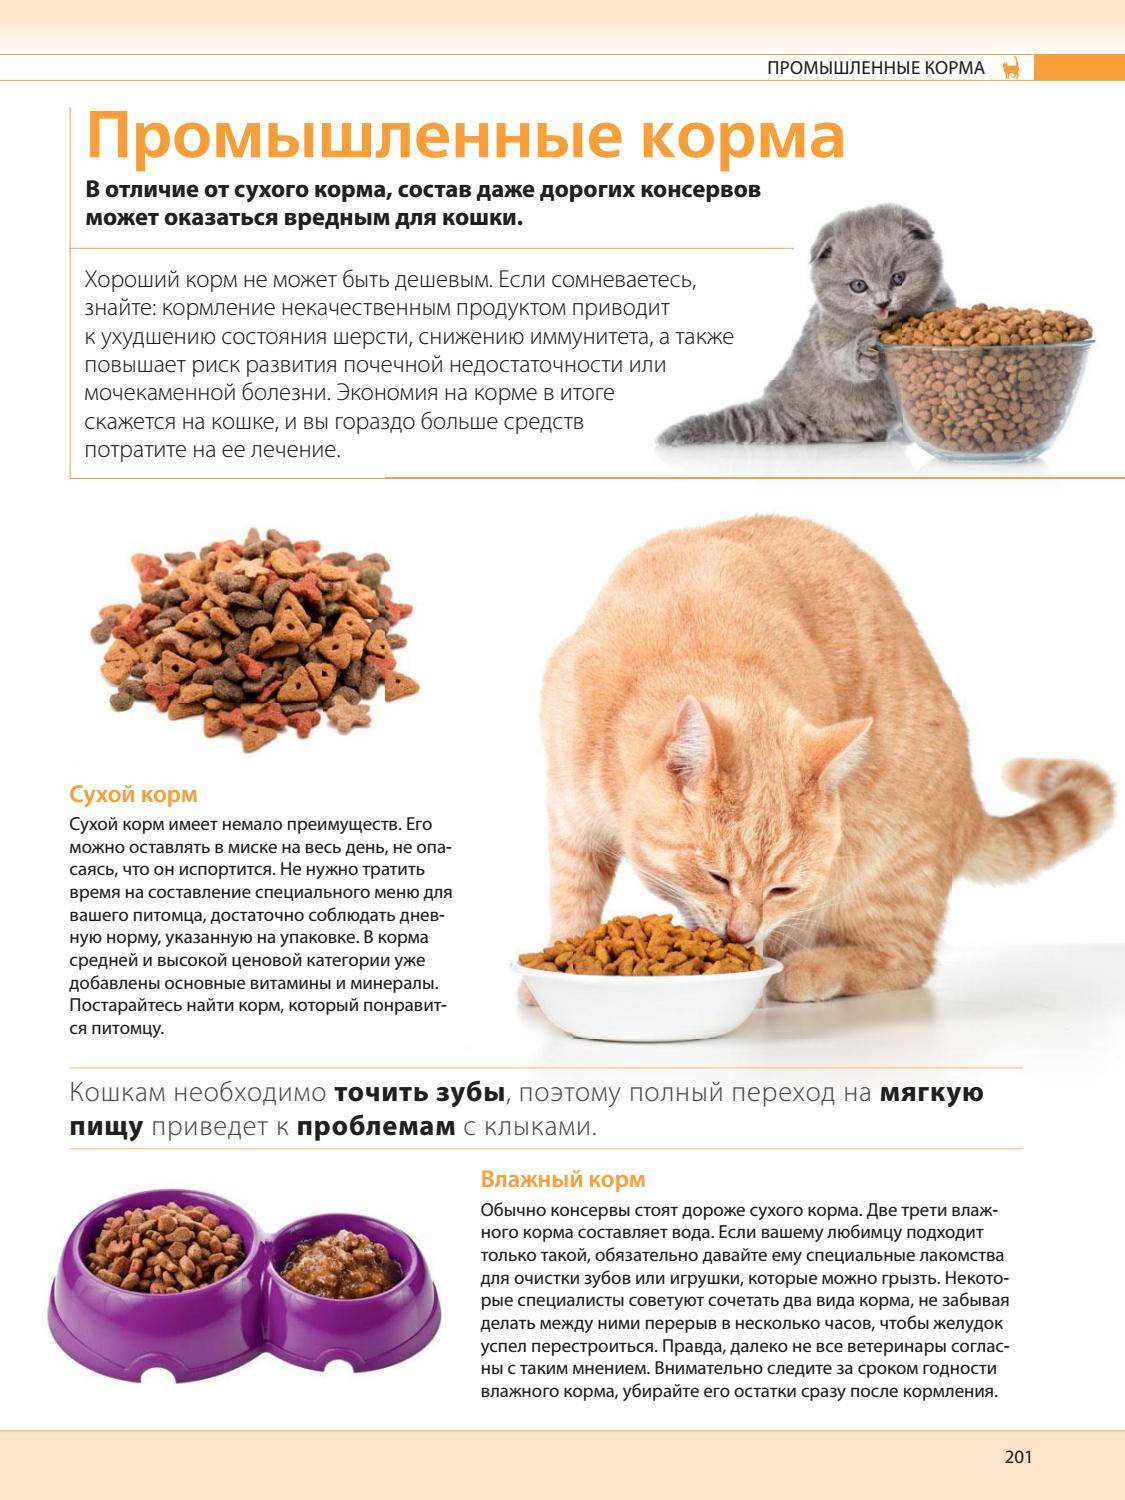 Можно или нельзя кормить кошек одновременно сухим кормом и натуральной домашней едой и почему?